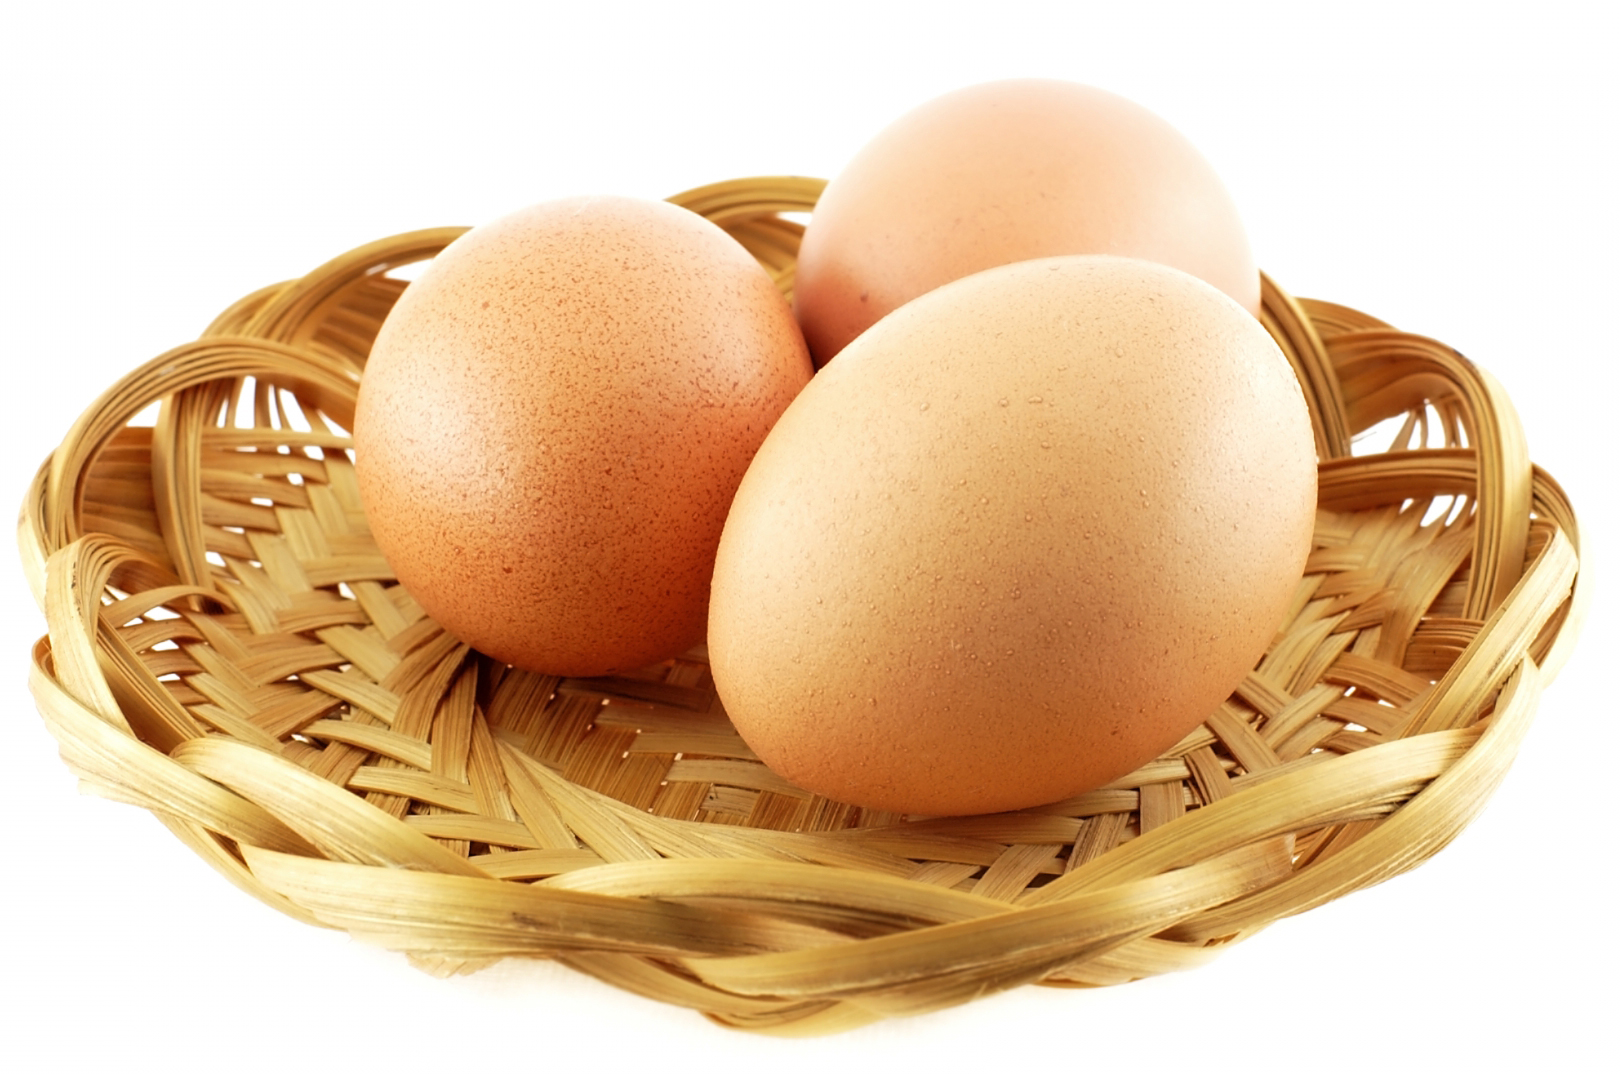 Nhận biết thực phẩm an toàn – trứng gà giả Trung Quốc qua hình dáng, kích thước bên ngoài và thông qua các giác quan